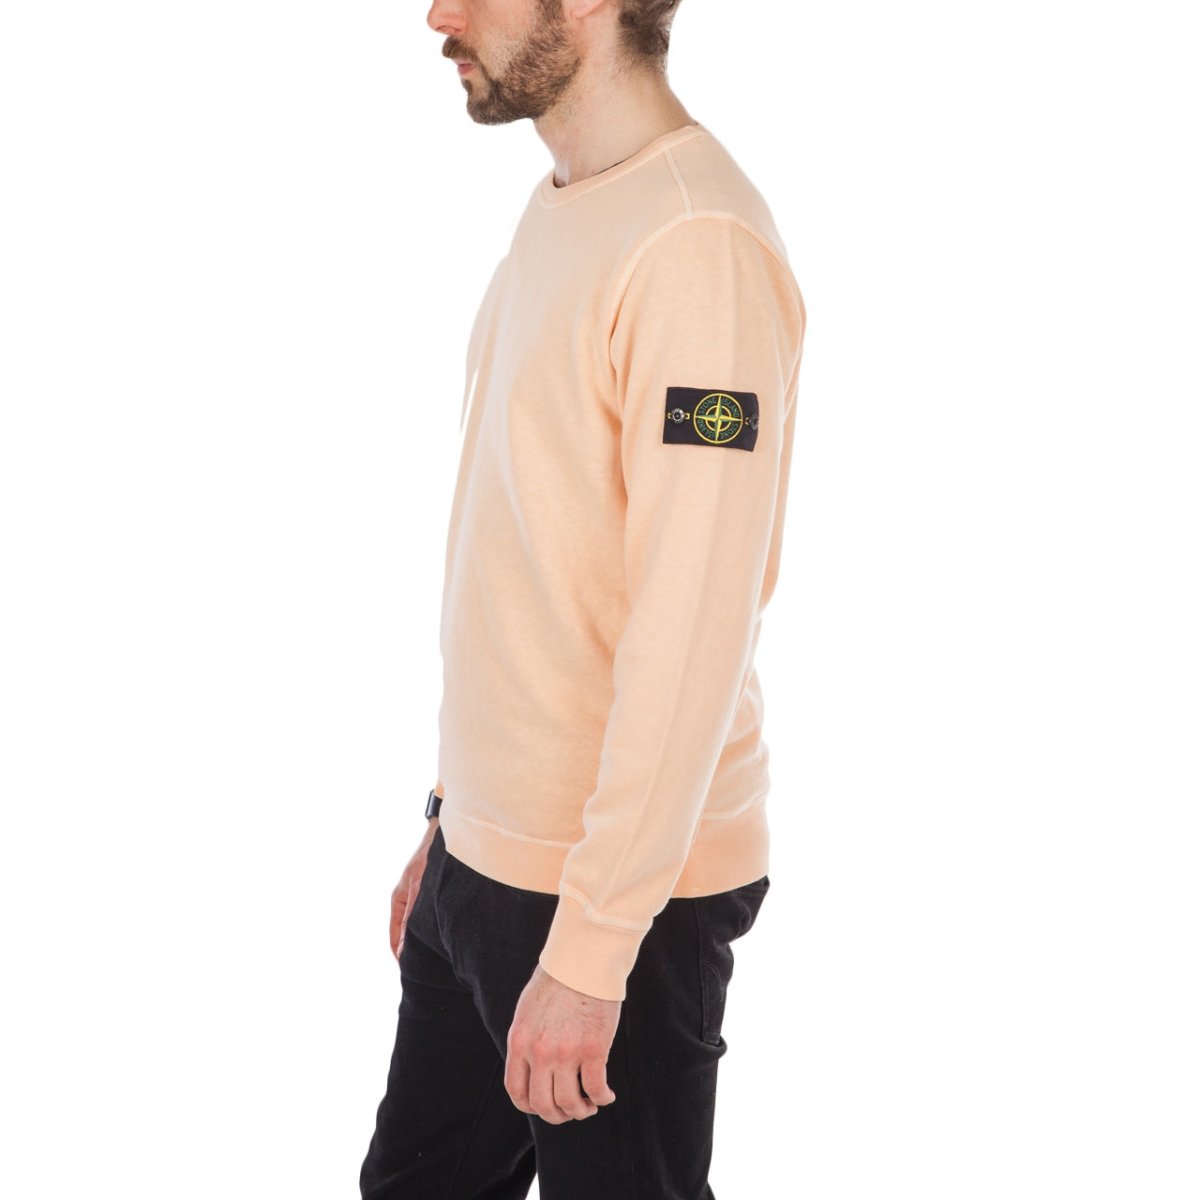 Stone Island Sweat Shirt (Apricot)  - Allike Store